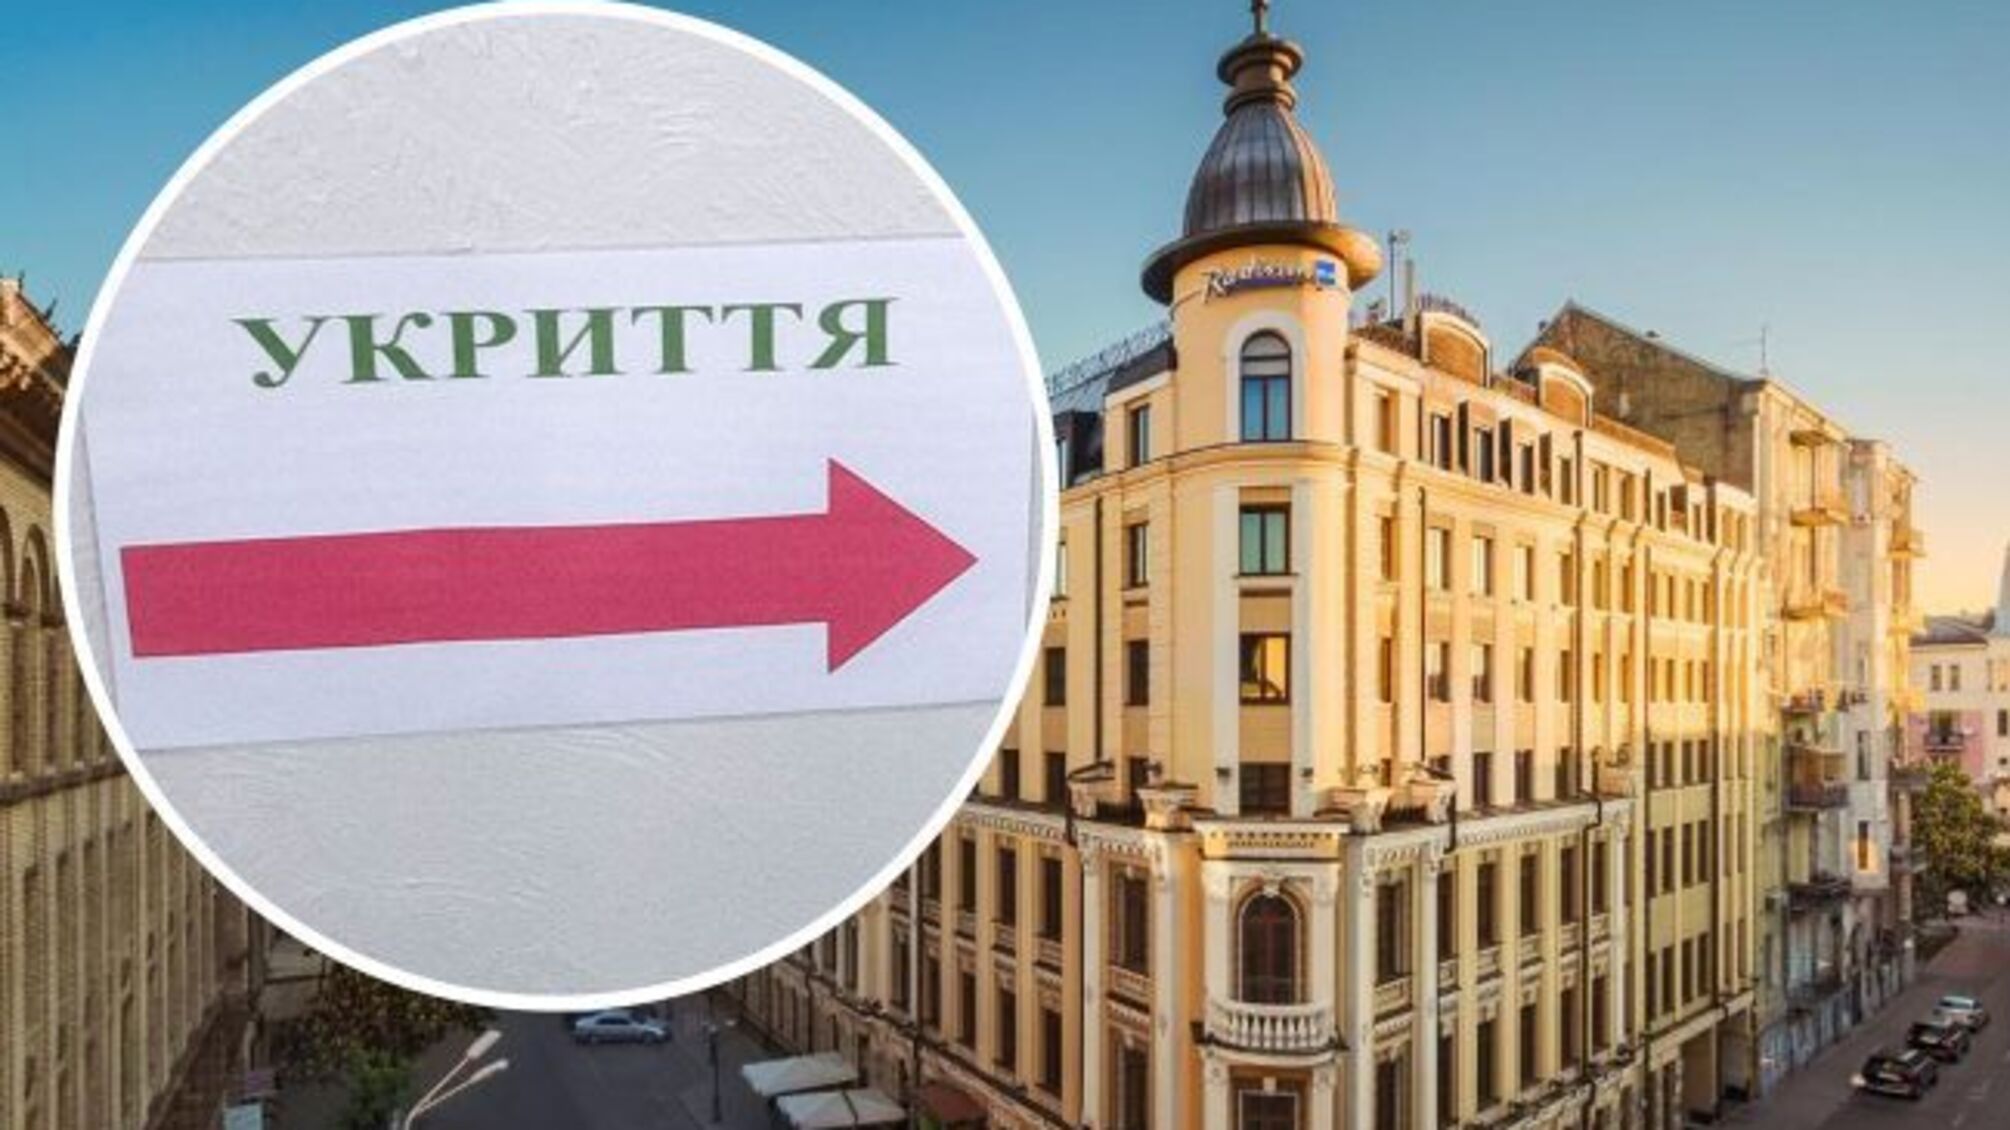 Элитная гостиница в Киеве попала в скандал из-за отказа пускать женщину в укрытие во время воздушной тревоги